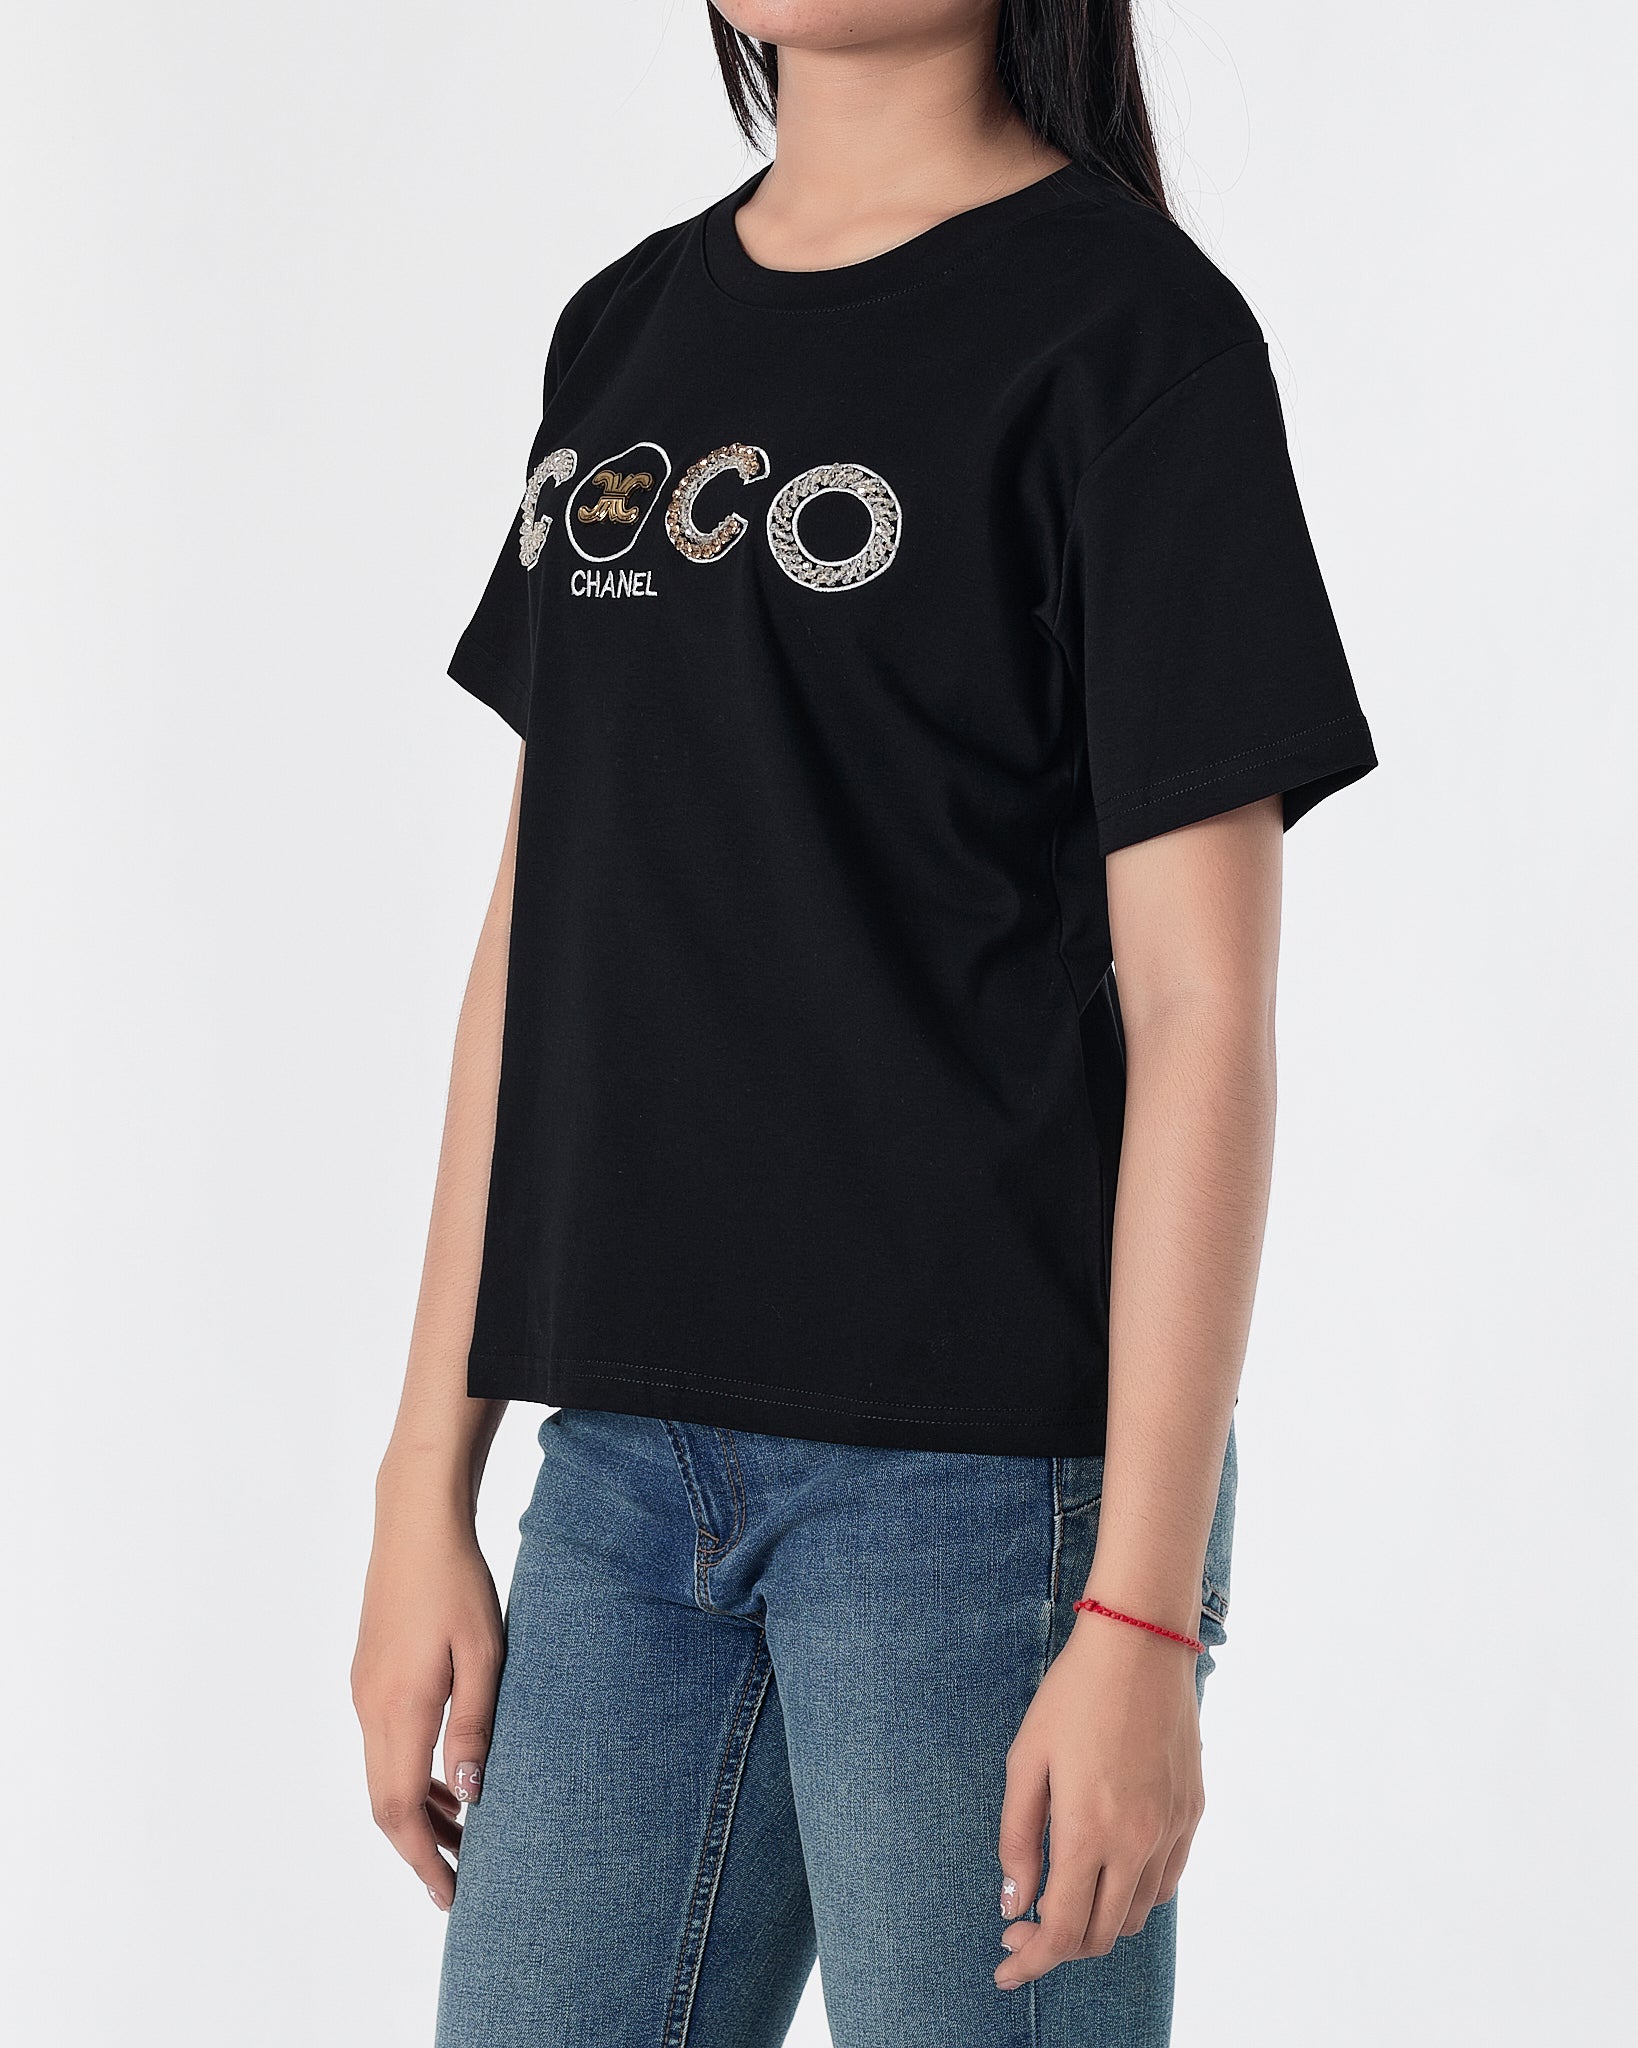 CHA COCO Rhinestone Lady Black T-Shirt 29.90